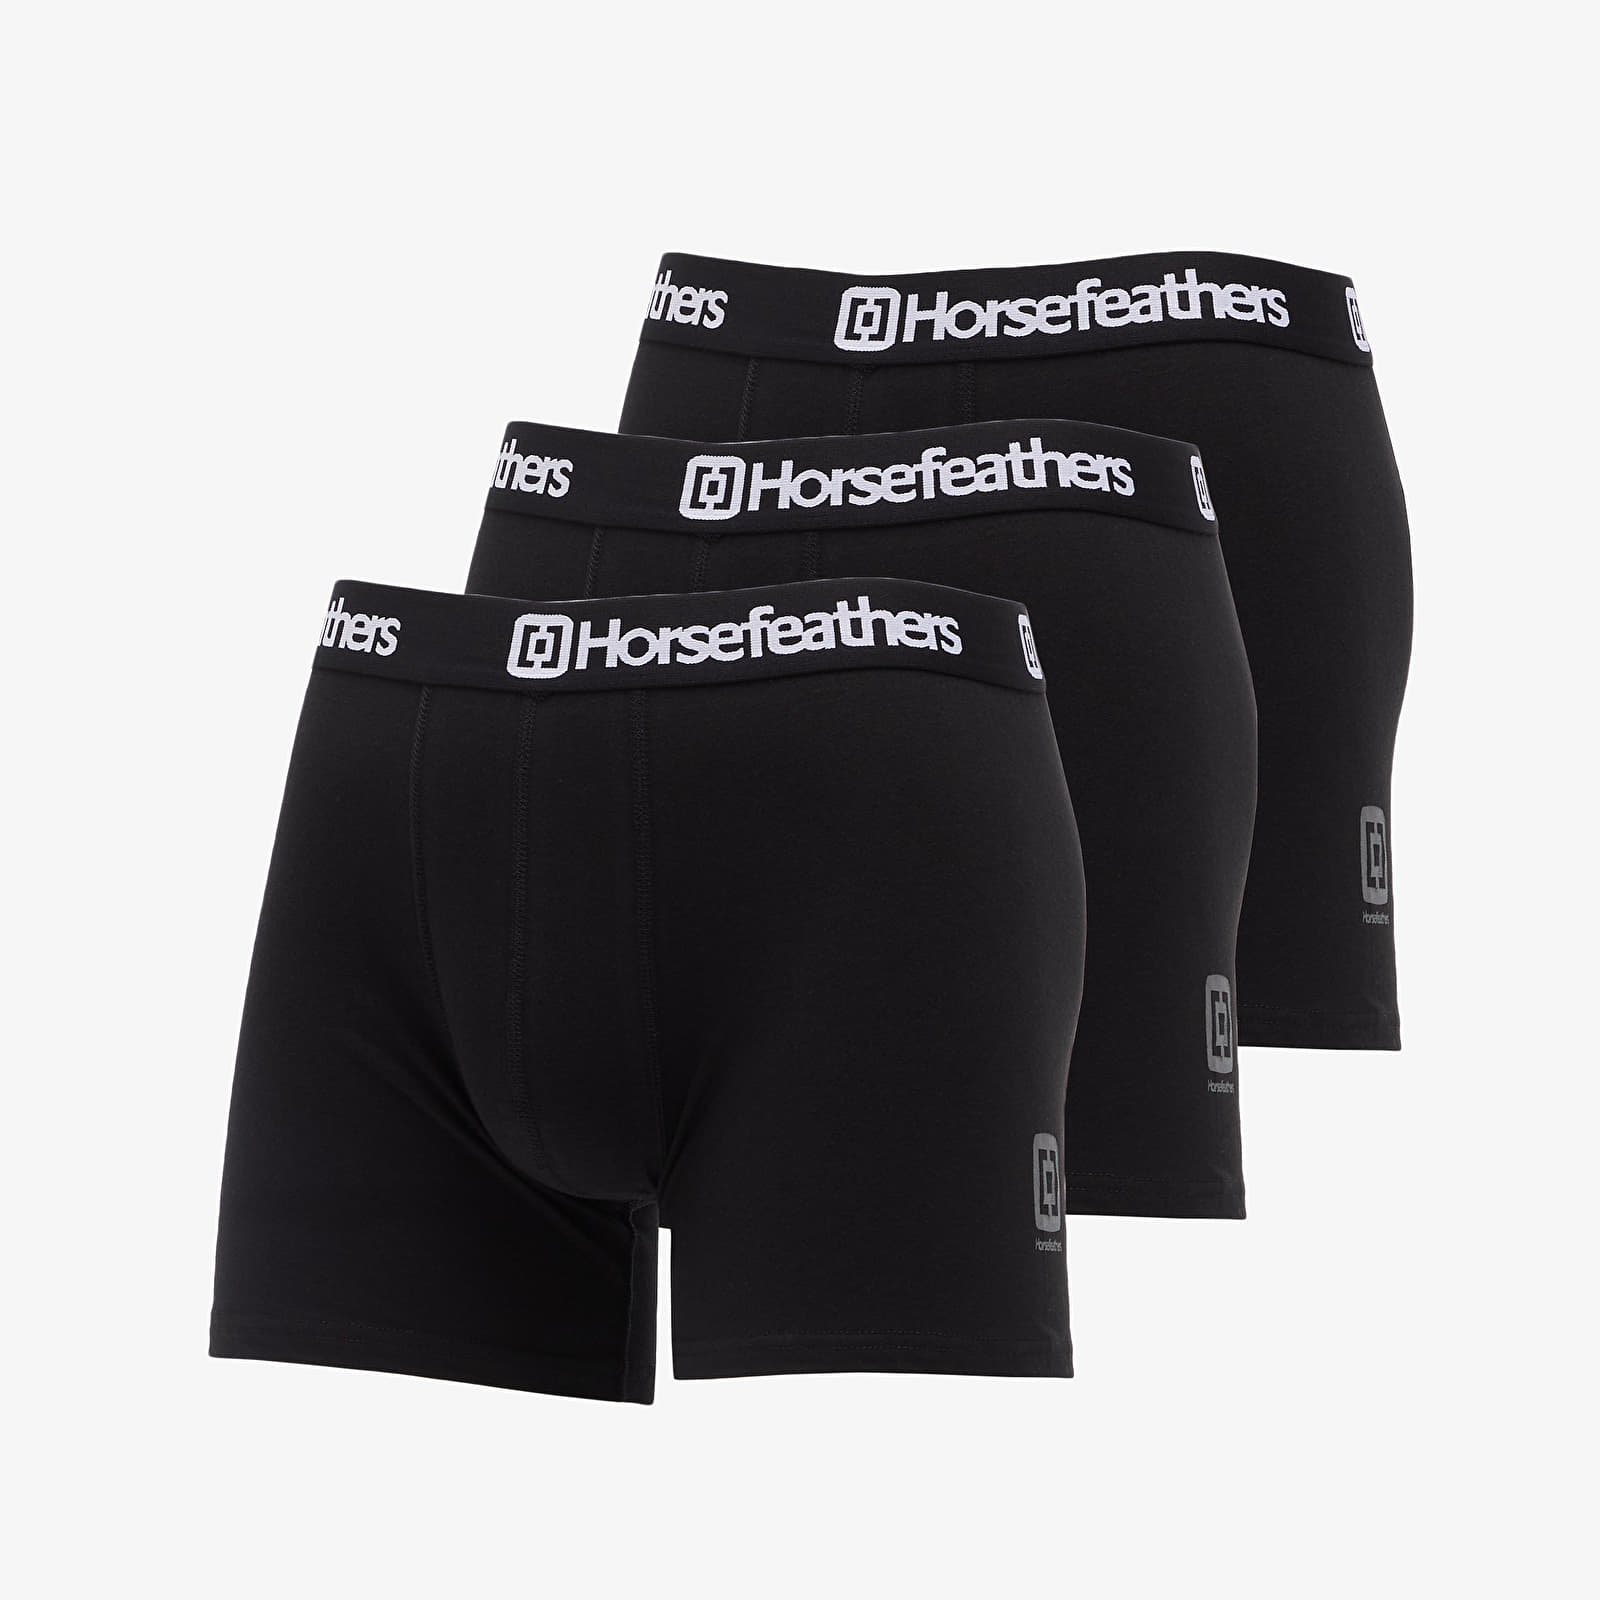 Boxer shorts Horsefeathers Dynasty 3Pack Boxer Shorts Black